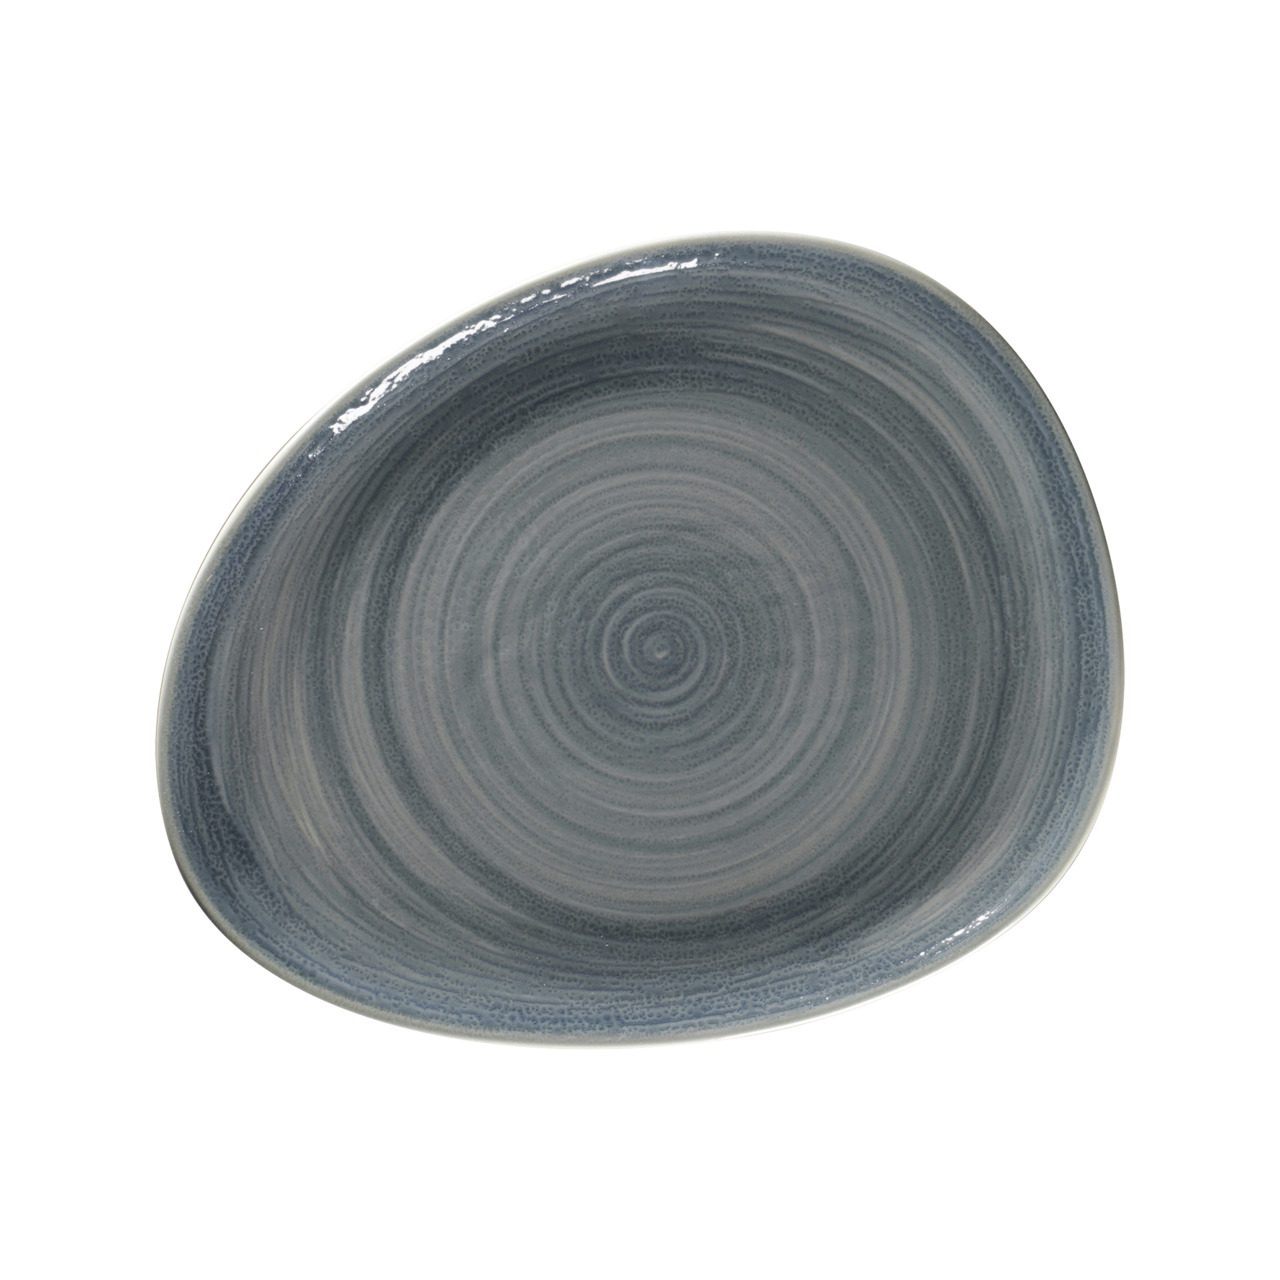 Spot, Teller flach organisch 279 x 224 mm jade blue